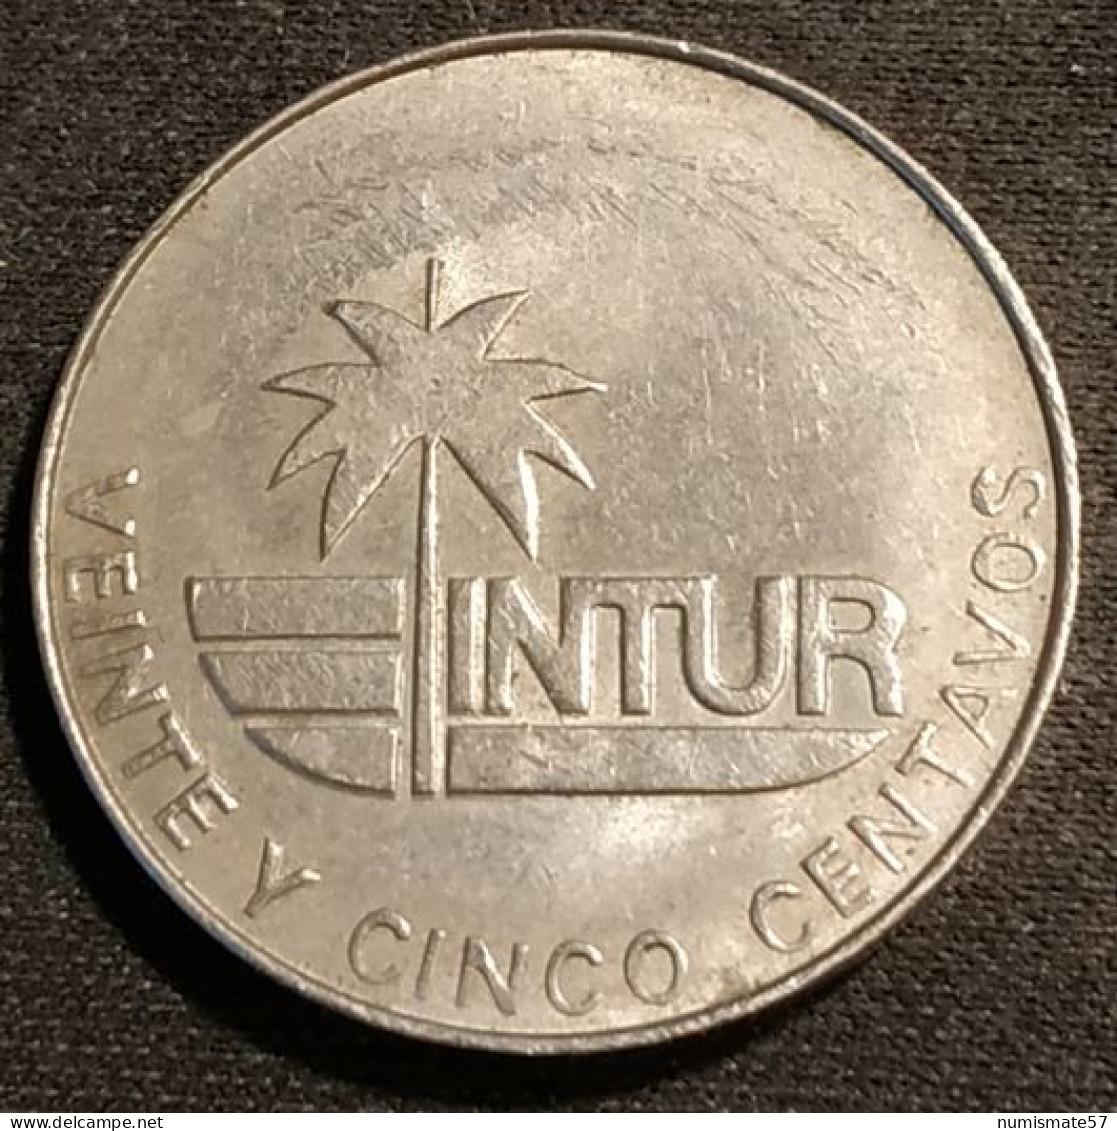 CUBA - 25 CENTAVOS 1981 - INTUR - KM 417 - ( Sans "25" - Without "25" ) - Cuba